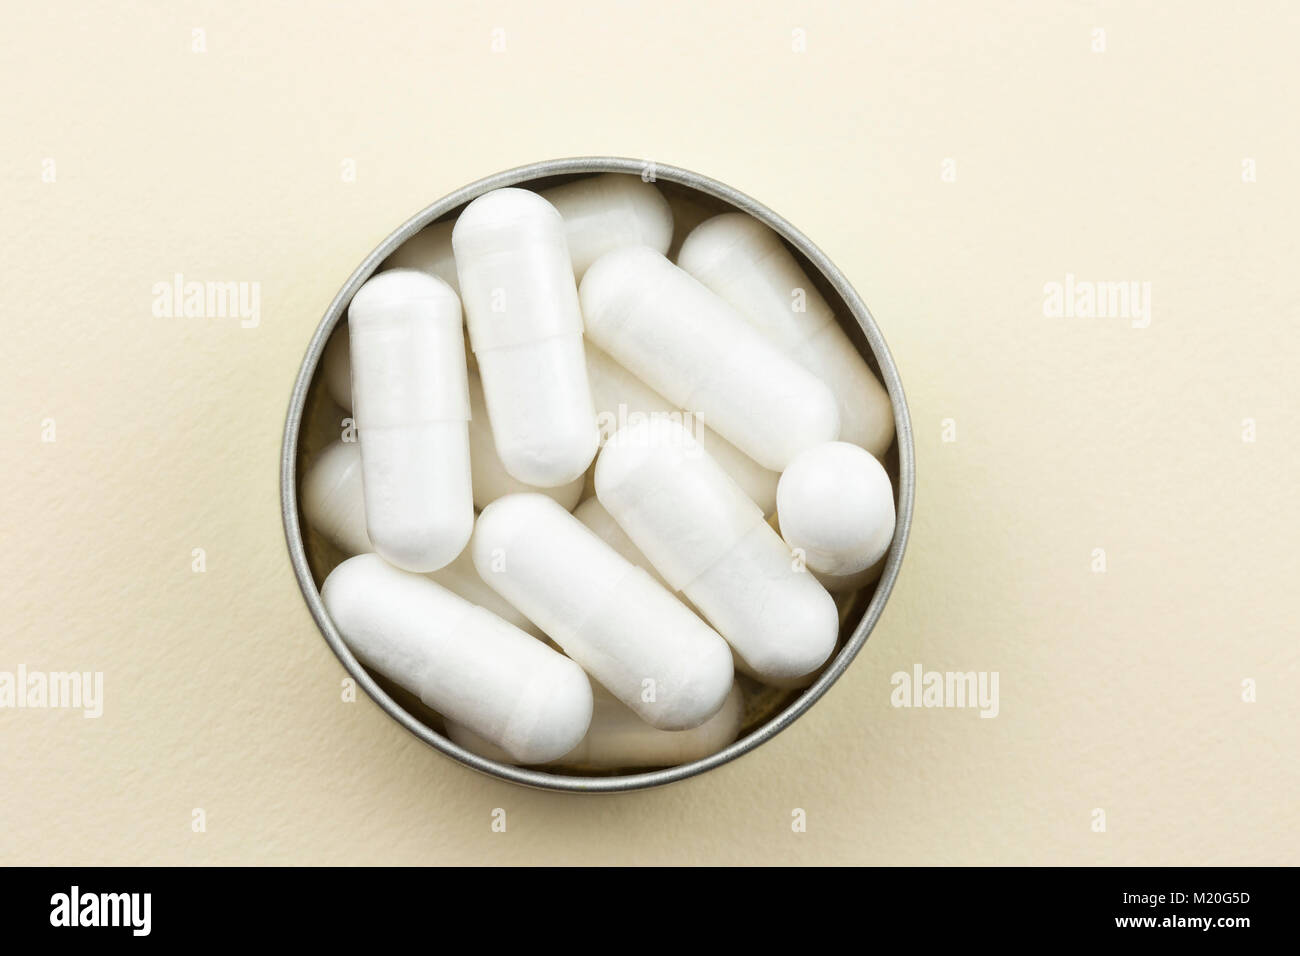 Vegan calcium supplements Stock Photo